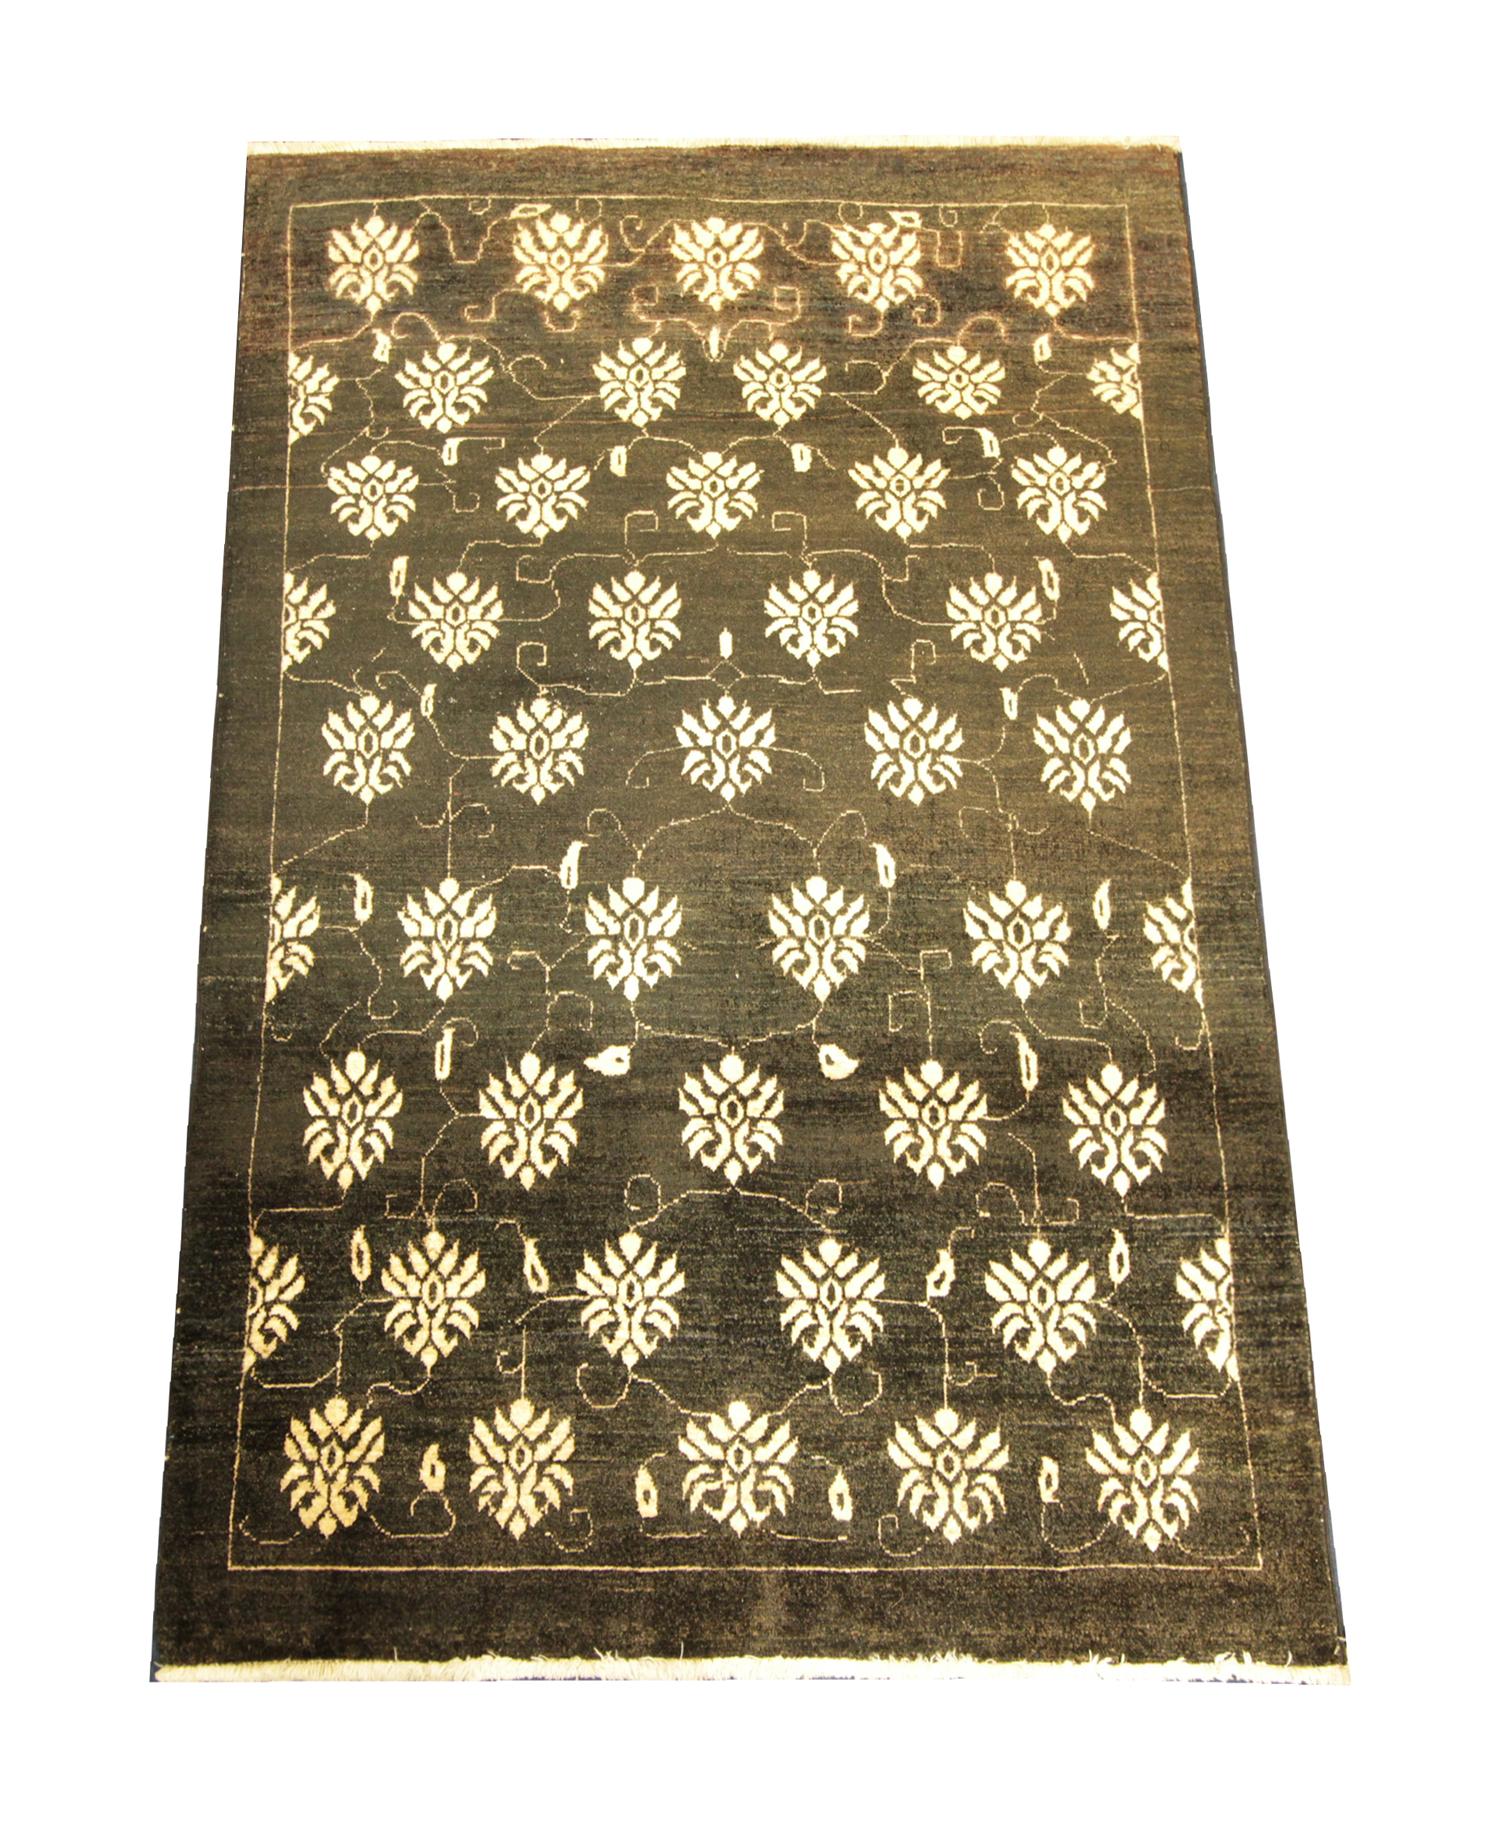 Ce tapis turc en laine fine a été tissé avec les matériaux organiques les plus fins. Le motif central a été tissé sur un fond noir avec un motif floral sur toute la surface et une bordure linéaire simple tissée en crème. Le design élégant et la